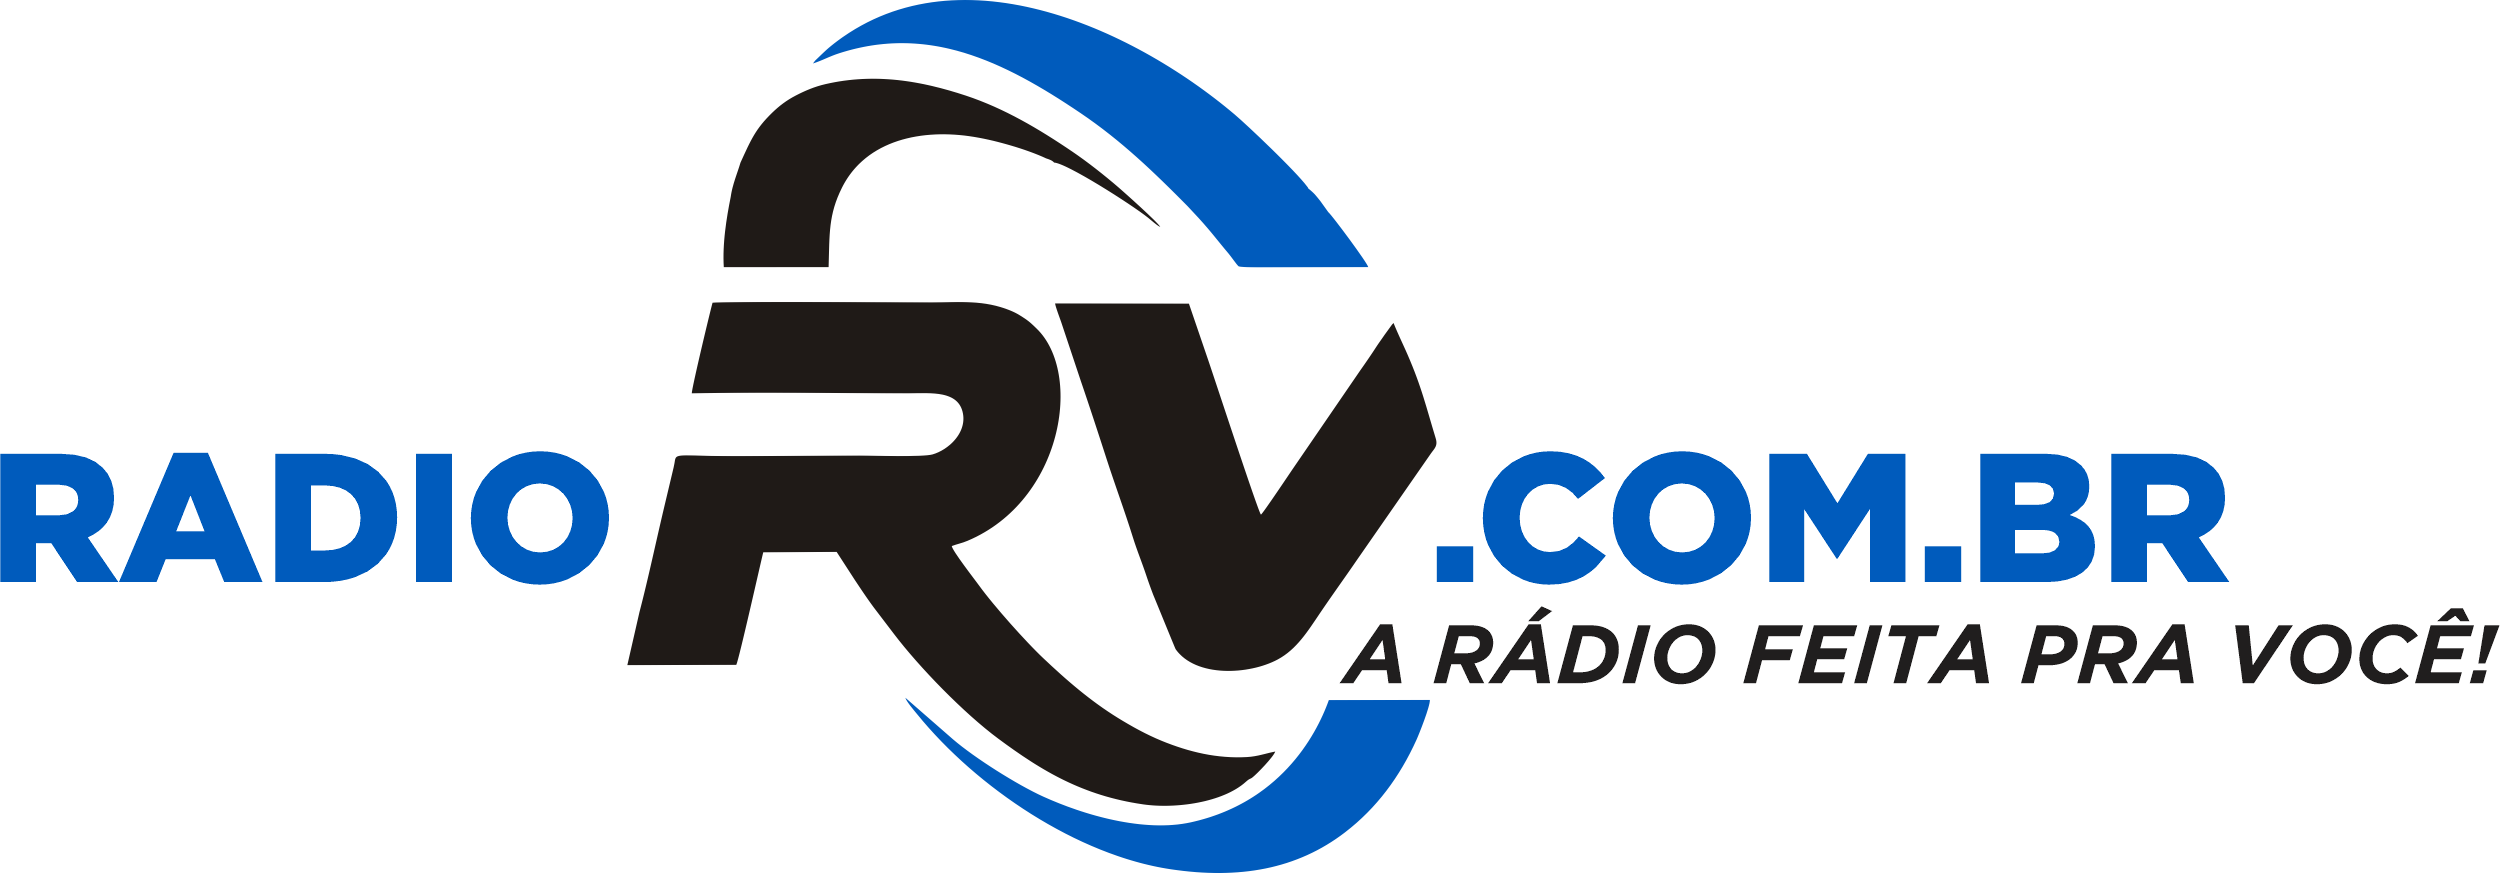 radiorv.com.br